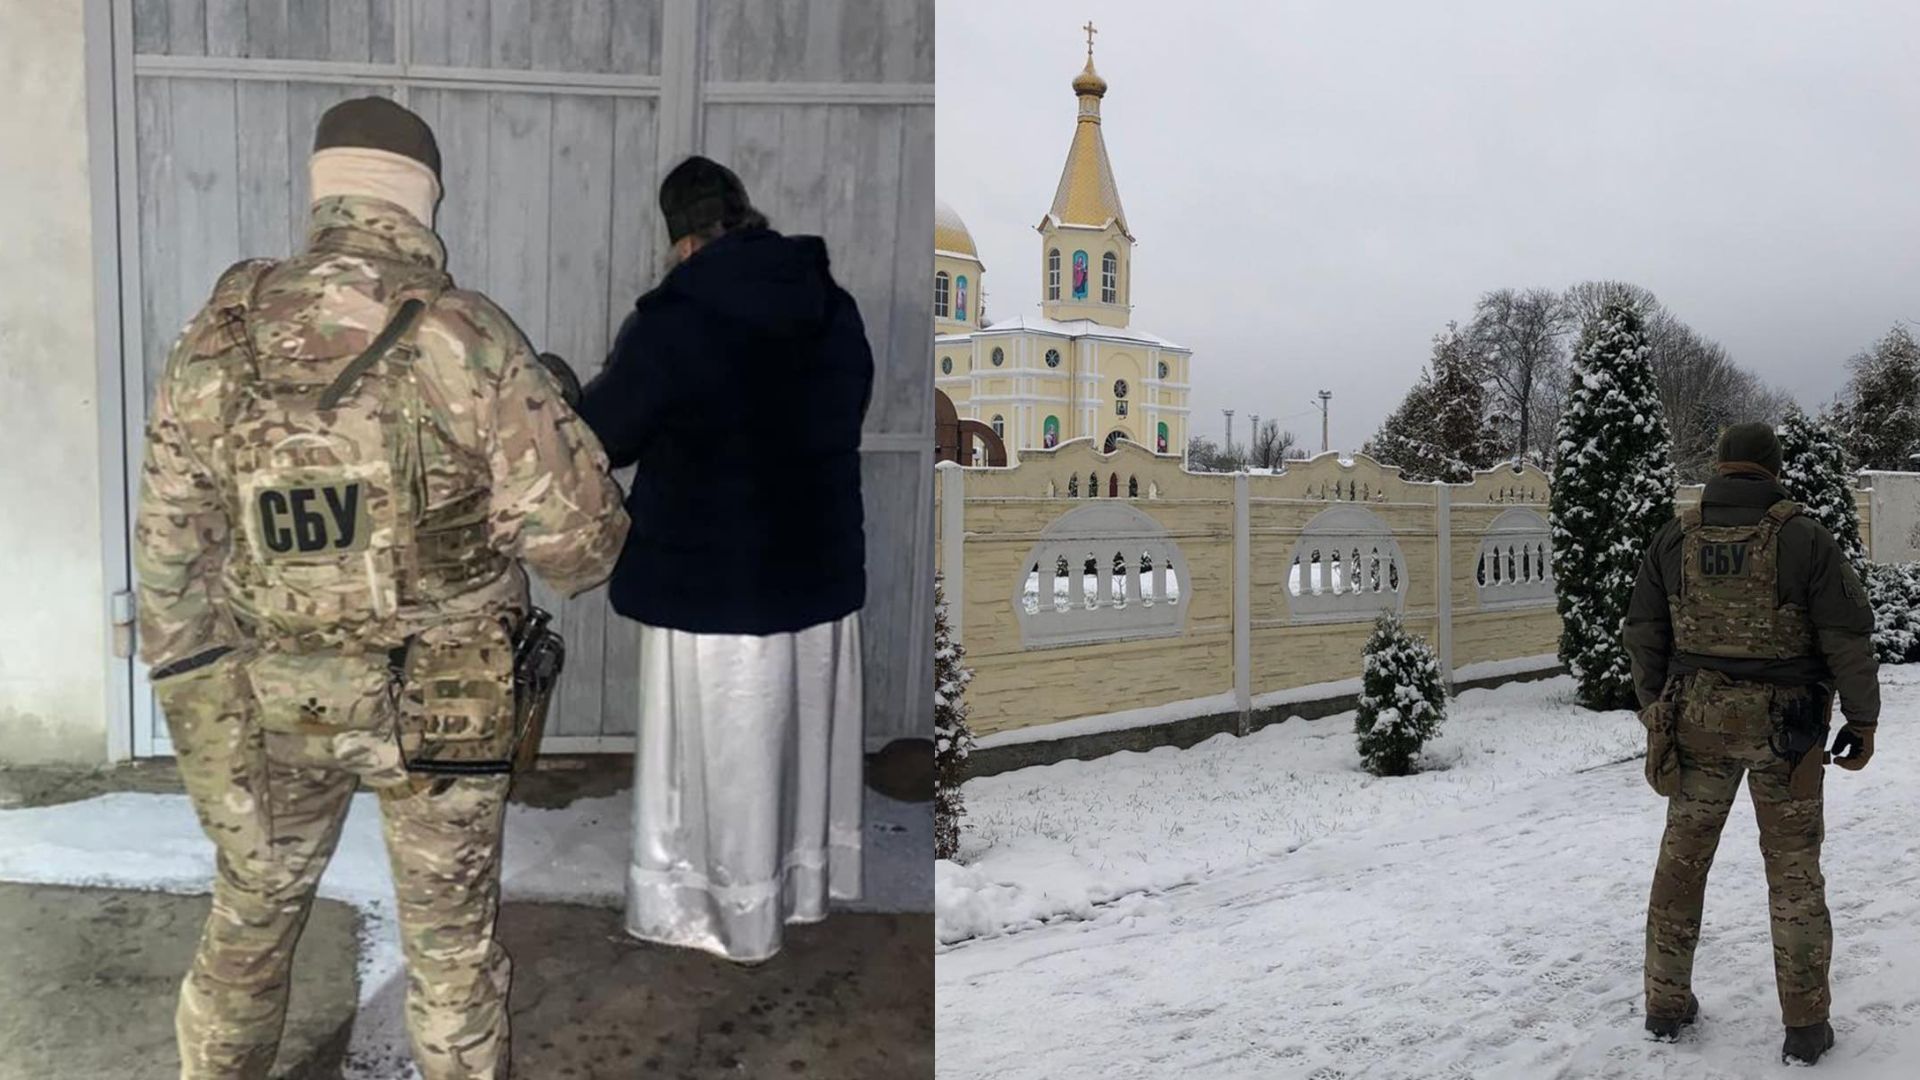 СБУ обыски в церквях - в Ровенской области проверяют монастырь 22.11.22 